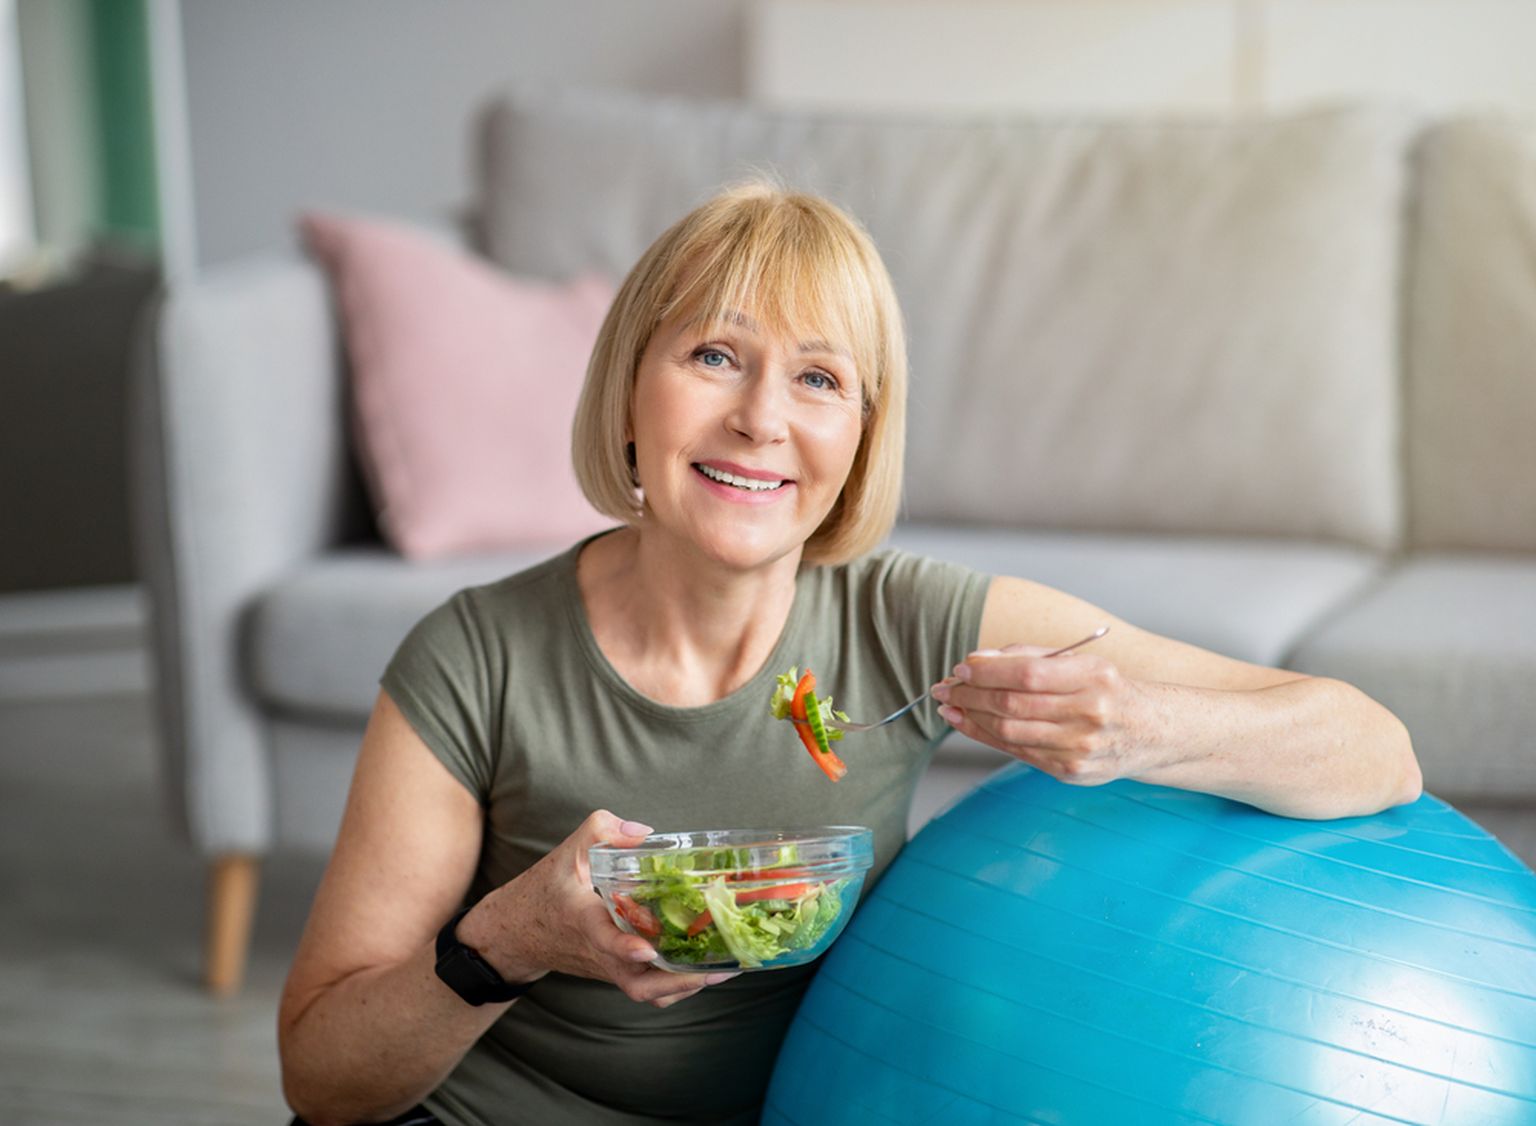 40ndates ja 50ndates aastates, kui me läheneme menopausile, väheneb östrogeenitase organismis. Kuna östrogeenil on oluline roll keharasva reguleerimisel, on kaalutõus eriti tavaline pärast menopausi.